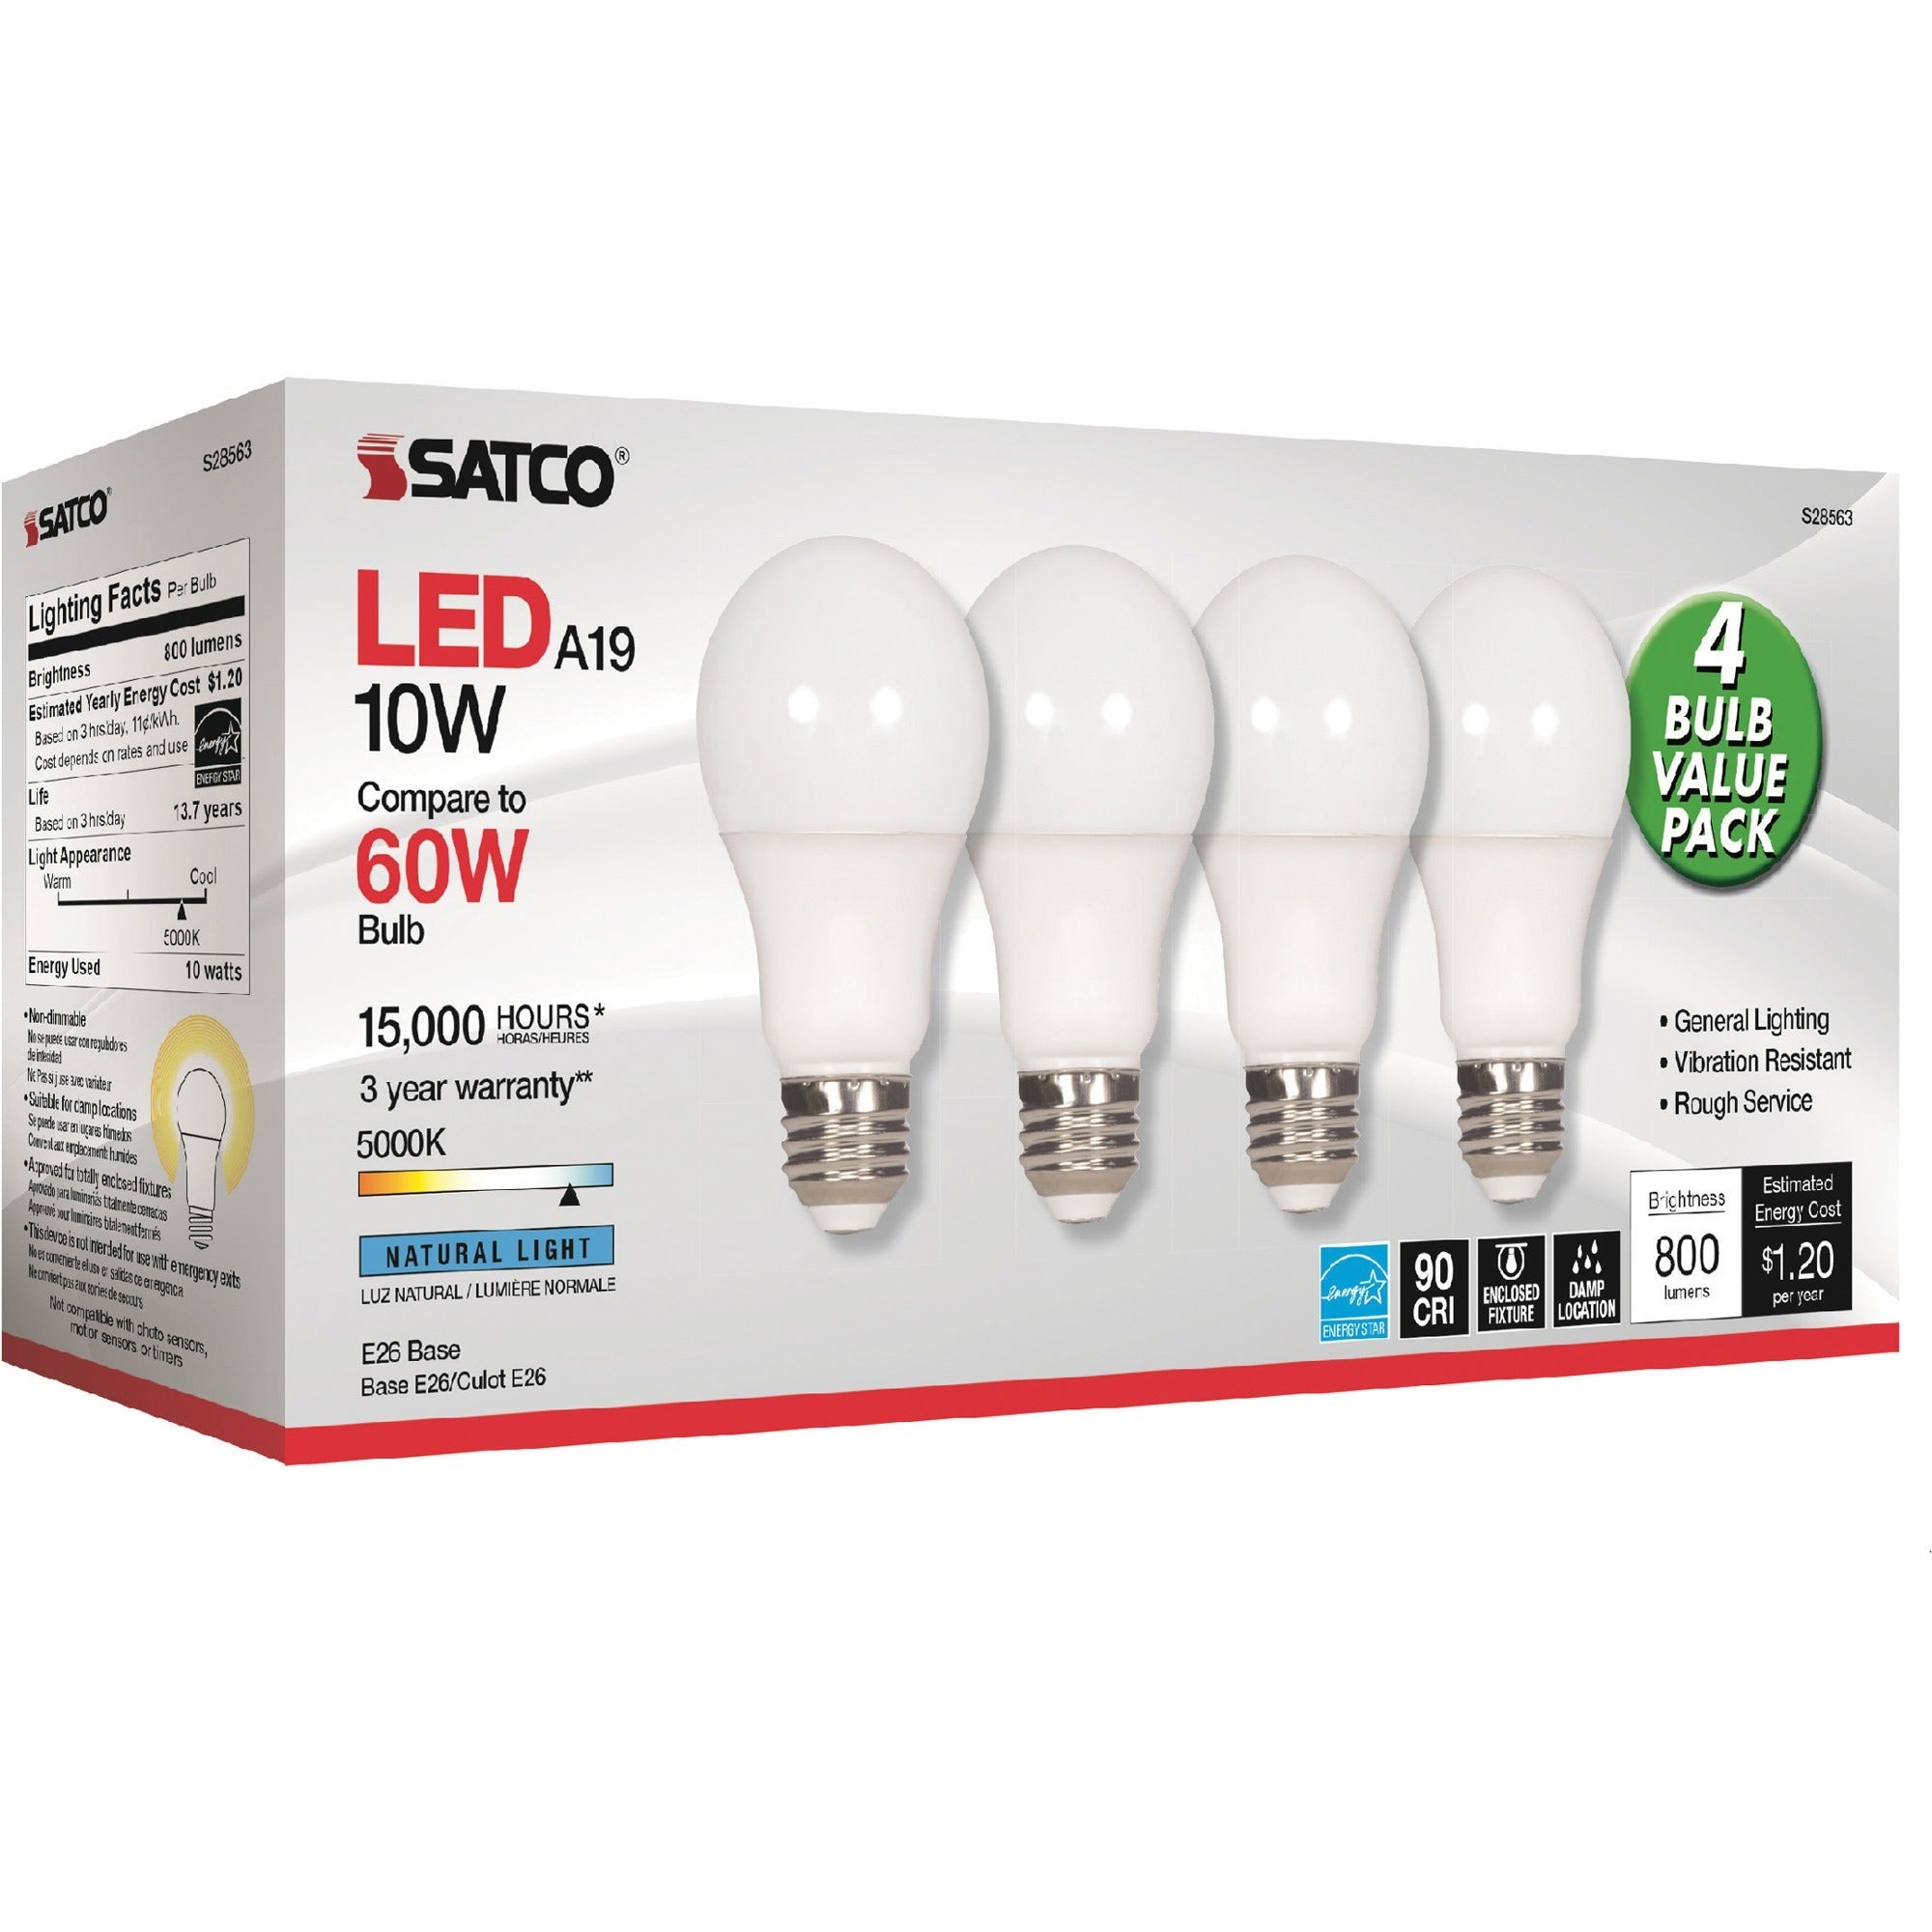 satco-10w-a19-led-5000k-light-bulbs_sdns28563 - 1